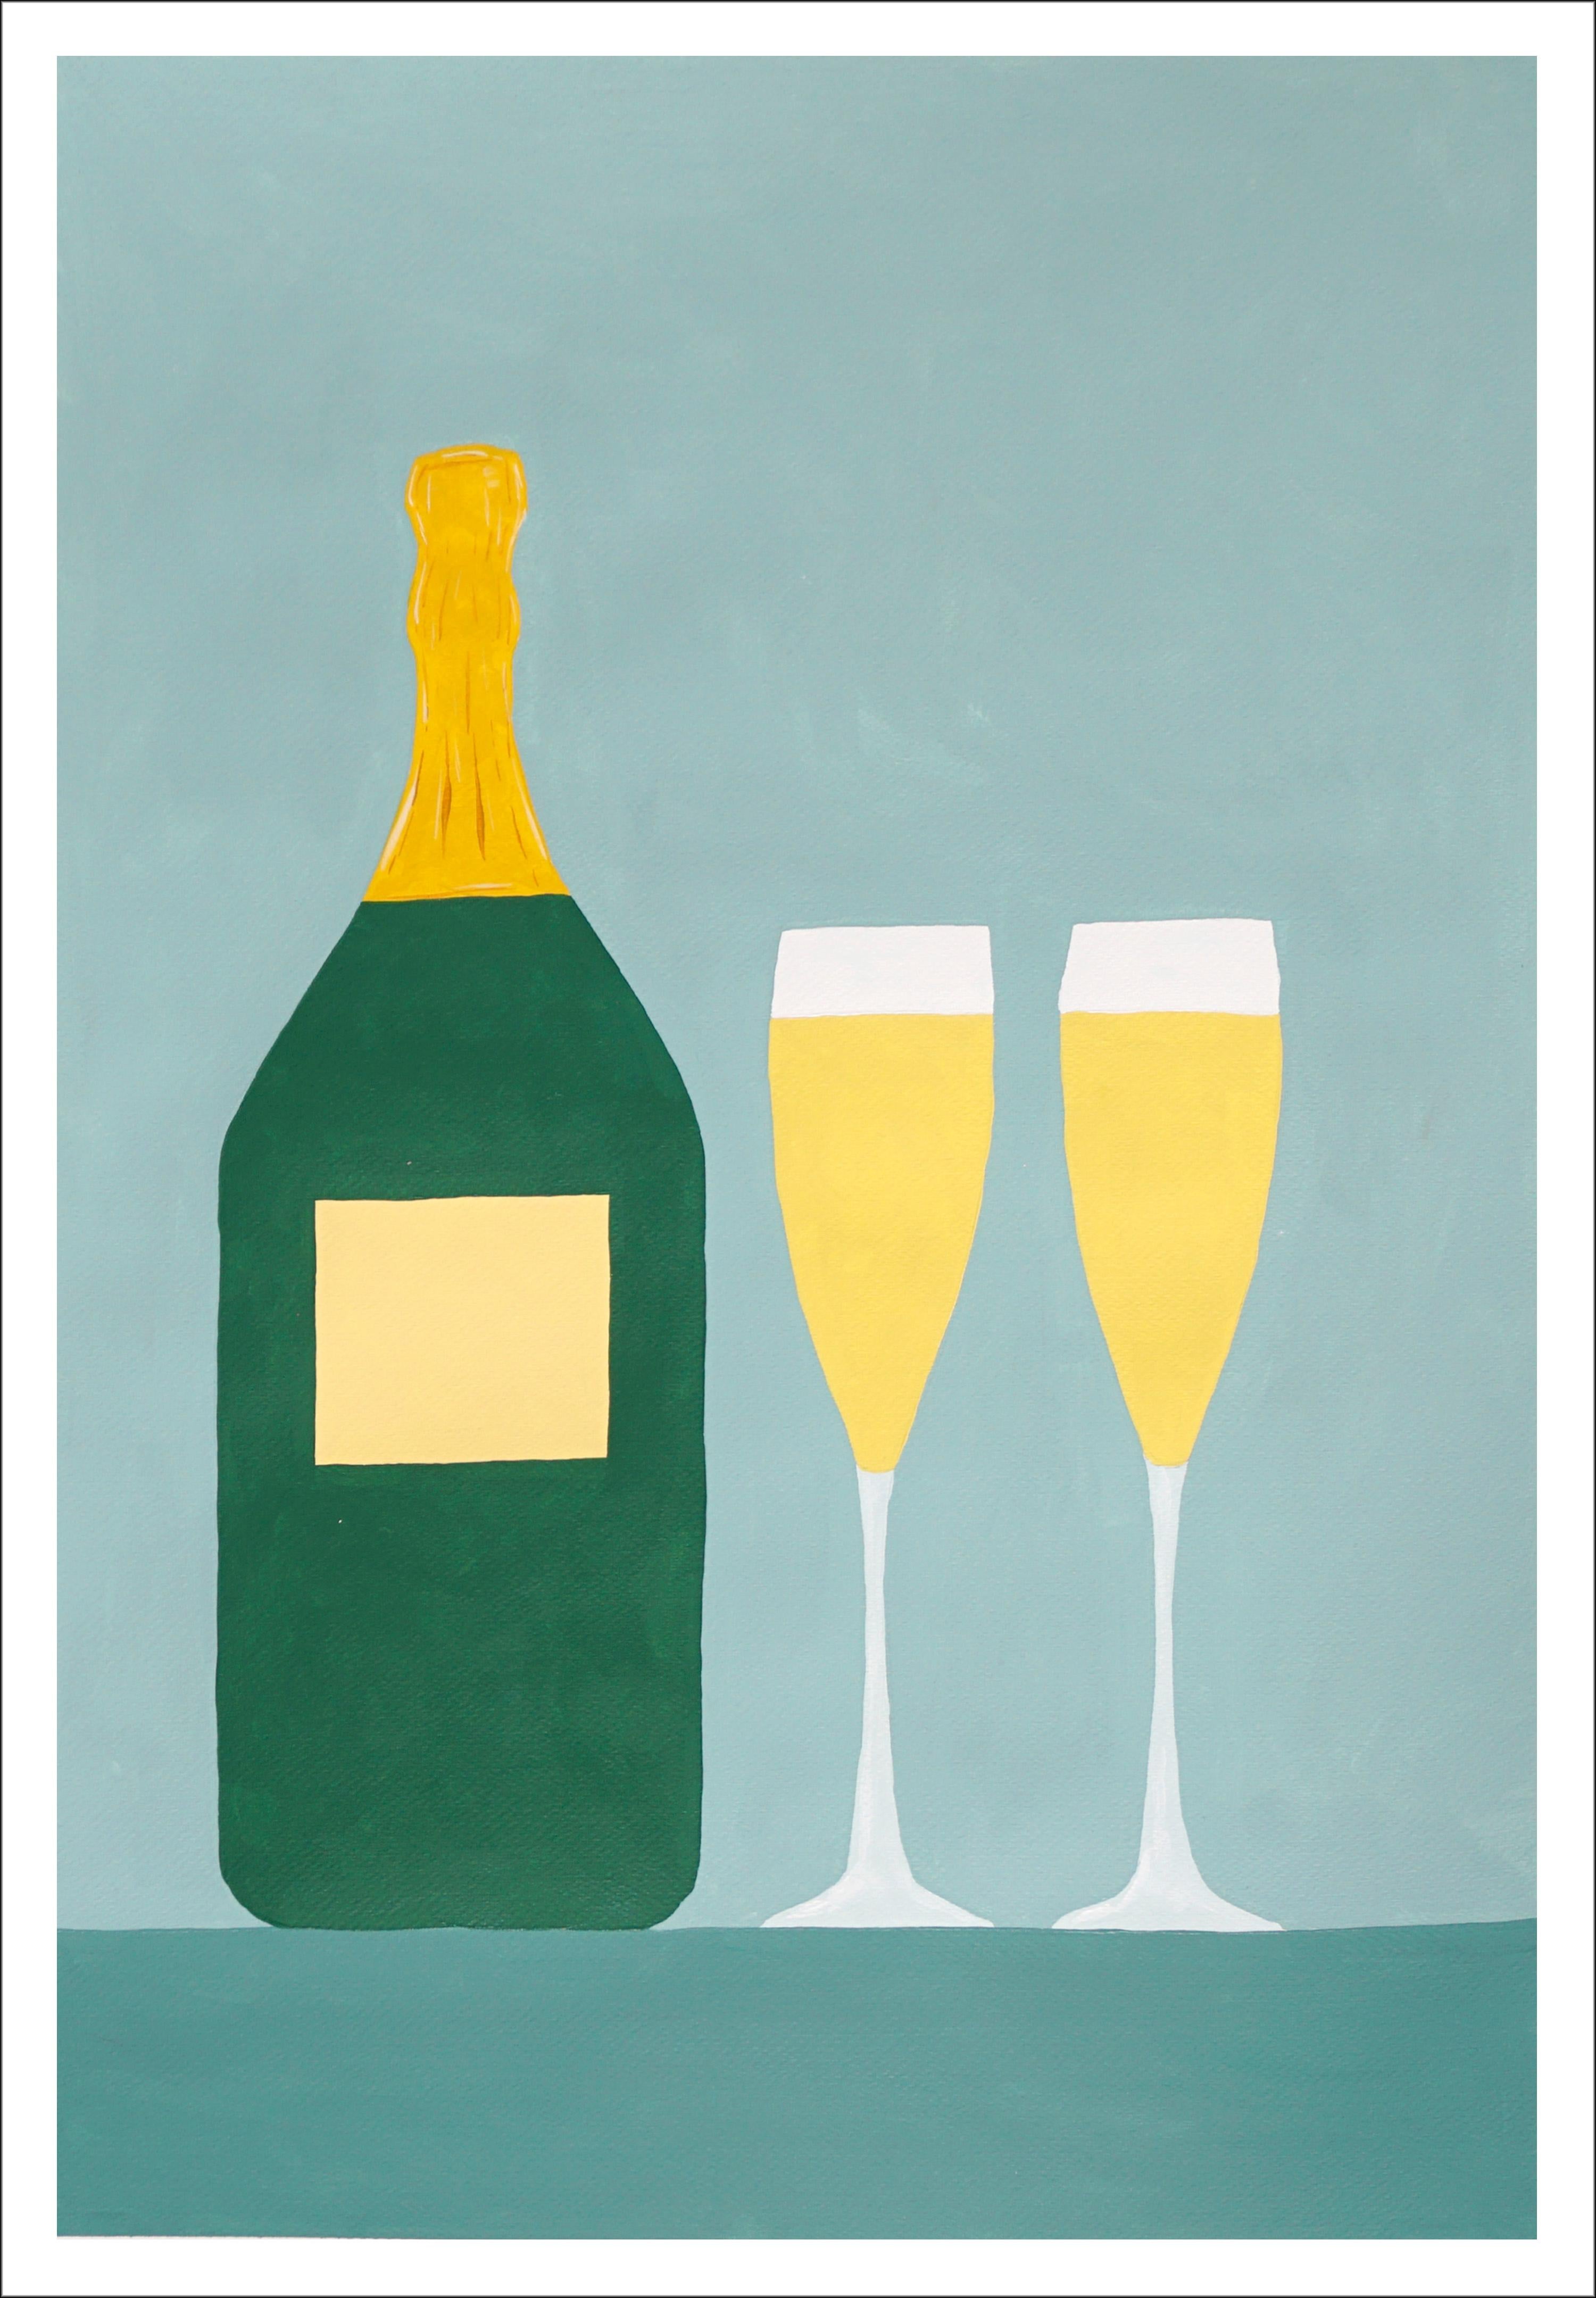 Still-Life Painting Gio Bellagio - Champagne for Two, nature morte moderne dans des tons dorés, vert pâle réaliste naïf  